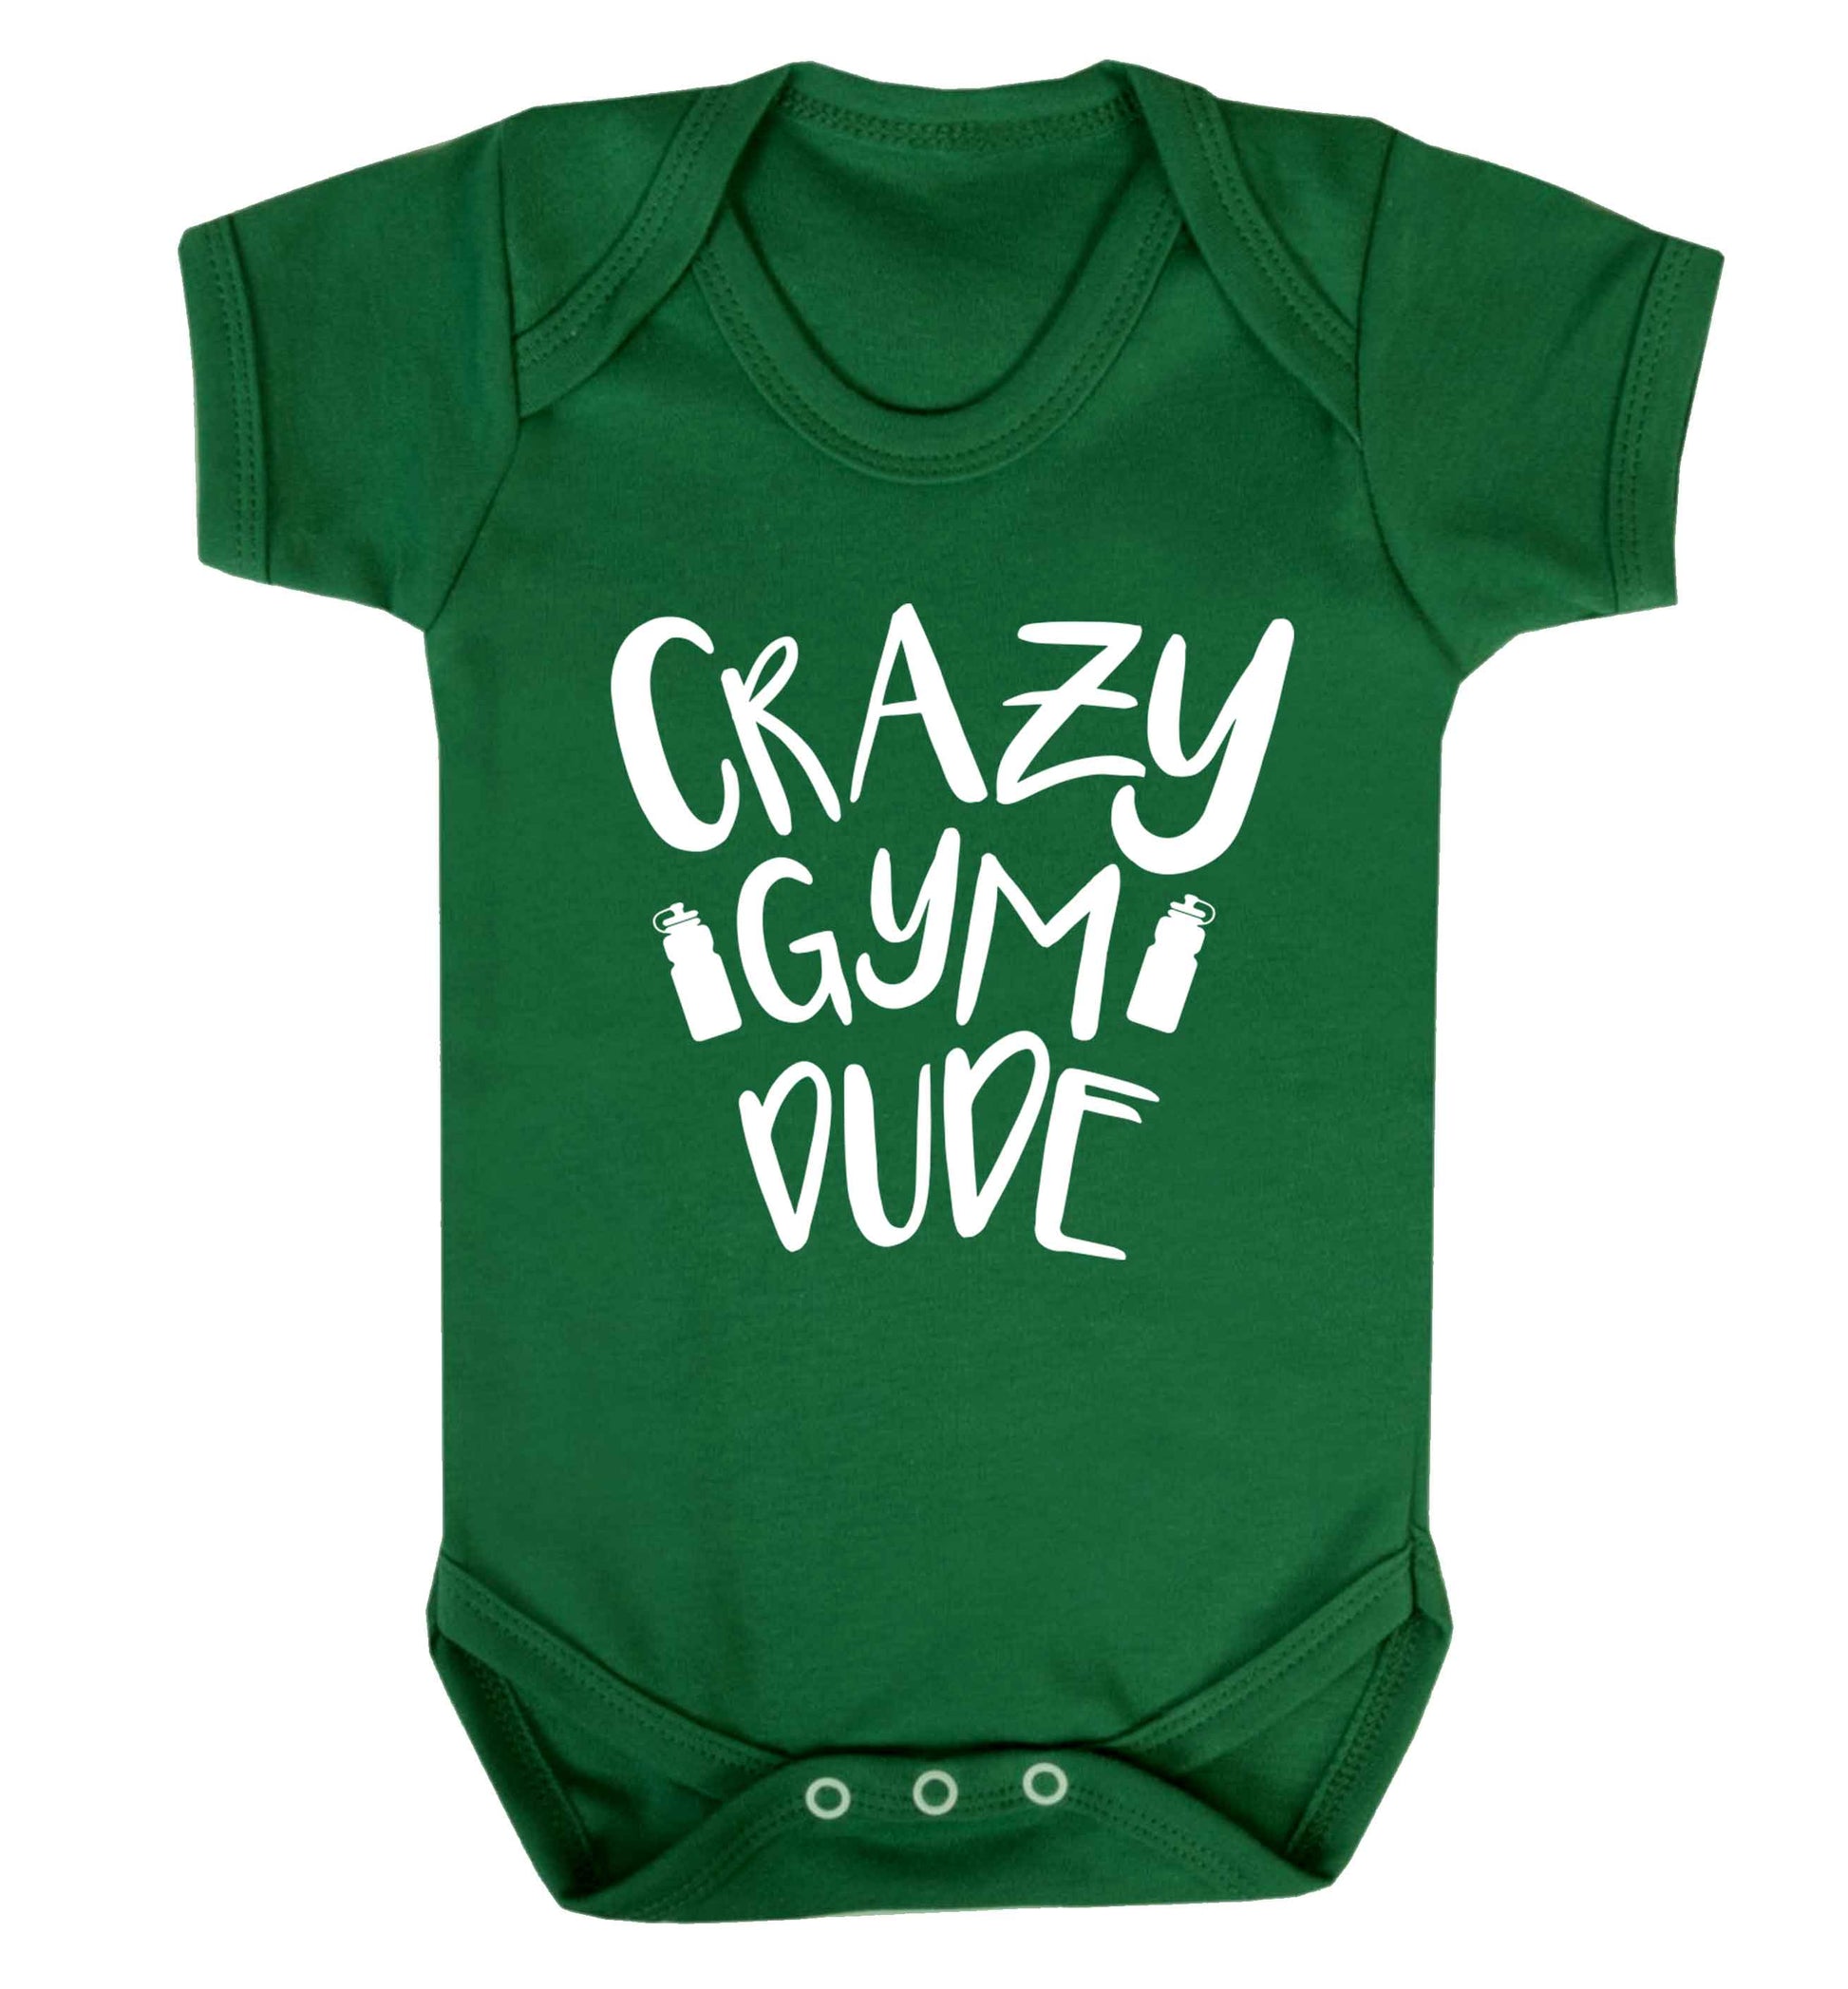 Crazy gym dude Baby Vest green 18-24 months